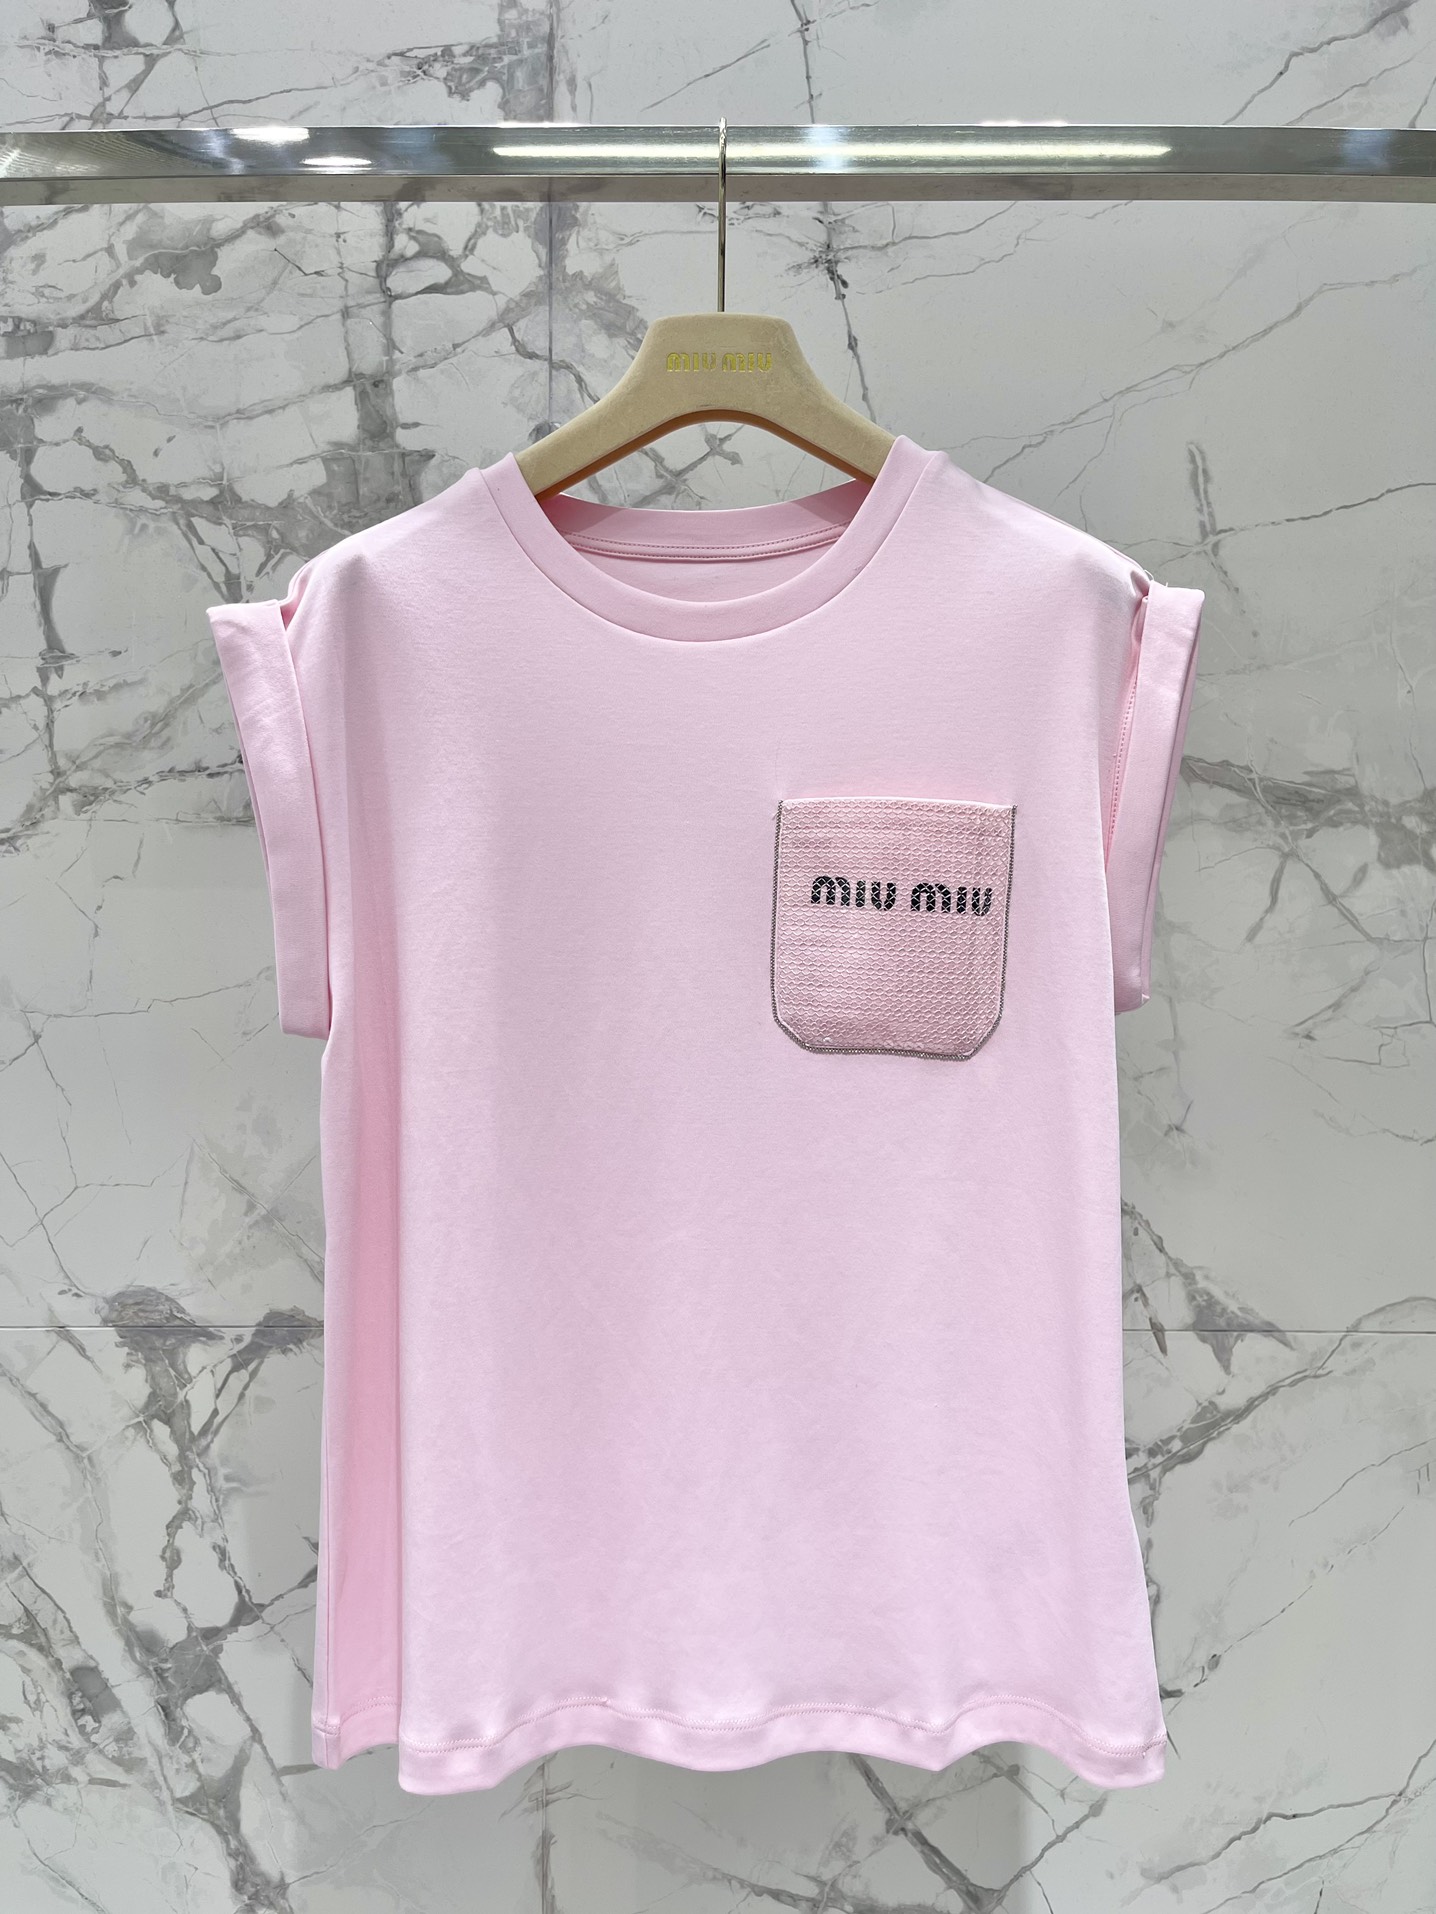 ミュウミュウスカーフスーパーコピー 柔らかい 無袖 Tシャツ トップス ファッション カジュアル 人気 シンプル ピンク_2